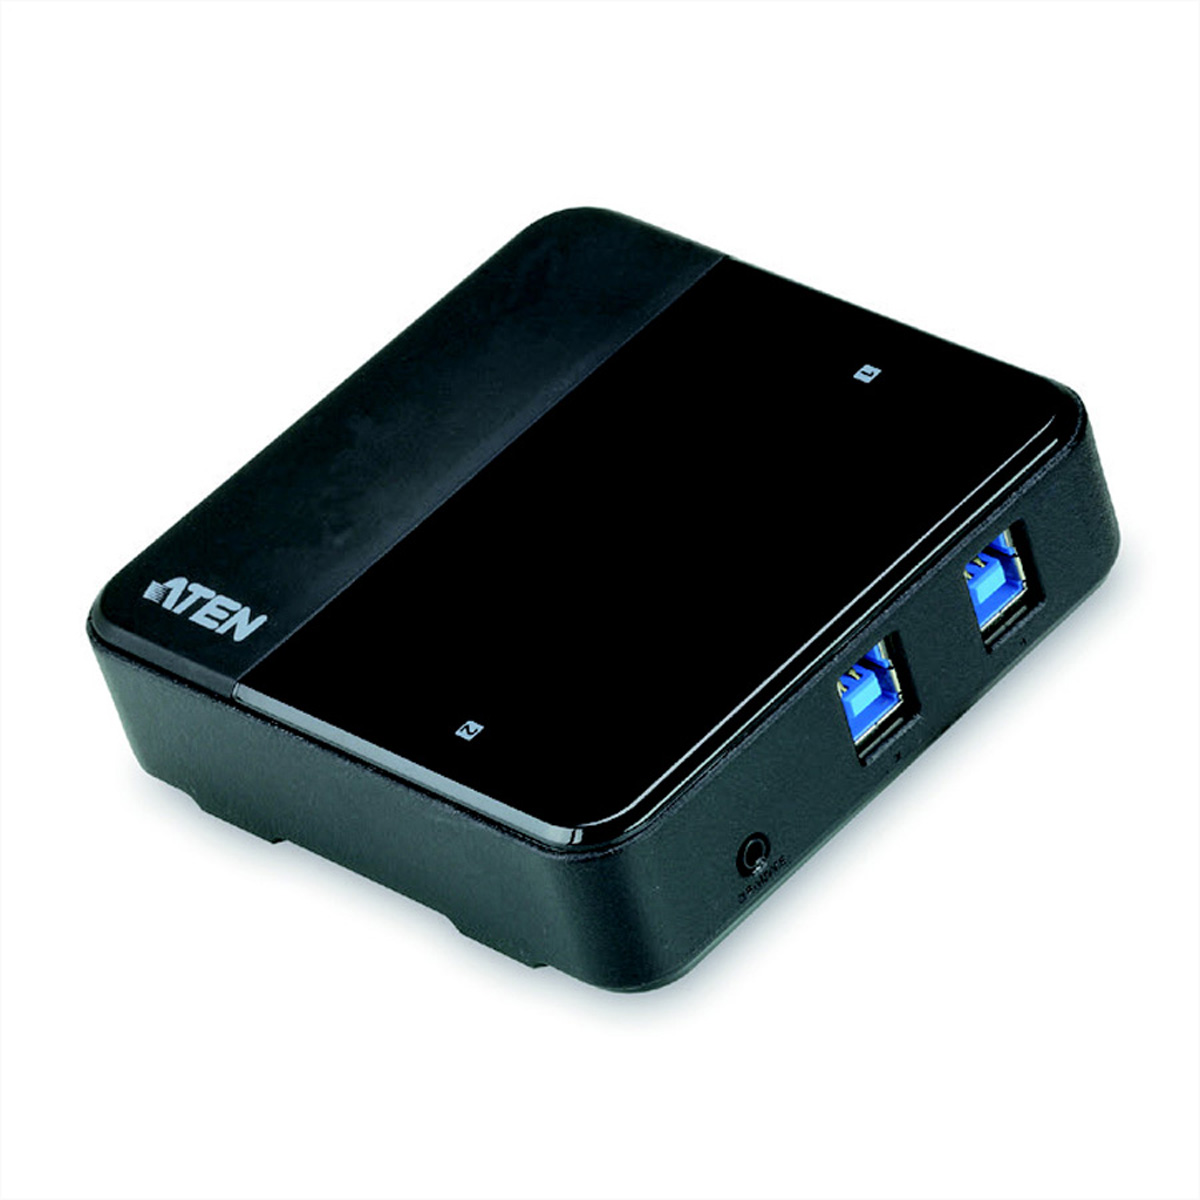 ATEN US234 USB 3.0-Peripheriegeräte-Switch mit 2 Ports, automatisch, Switchbox, schwarz